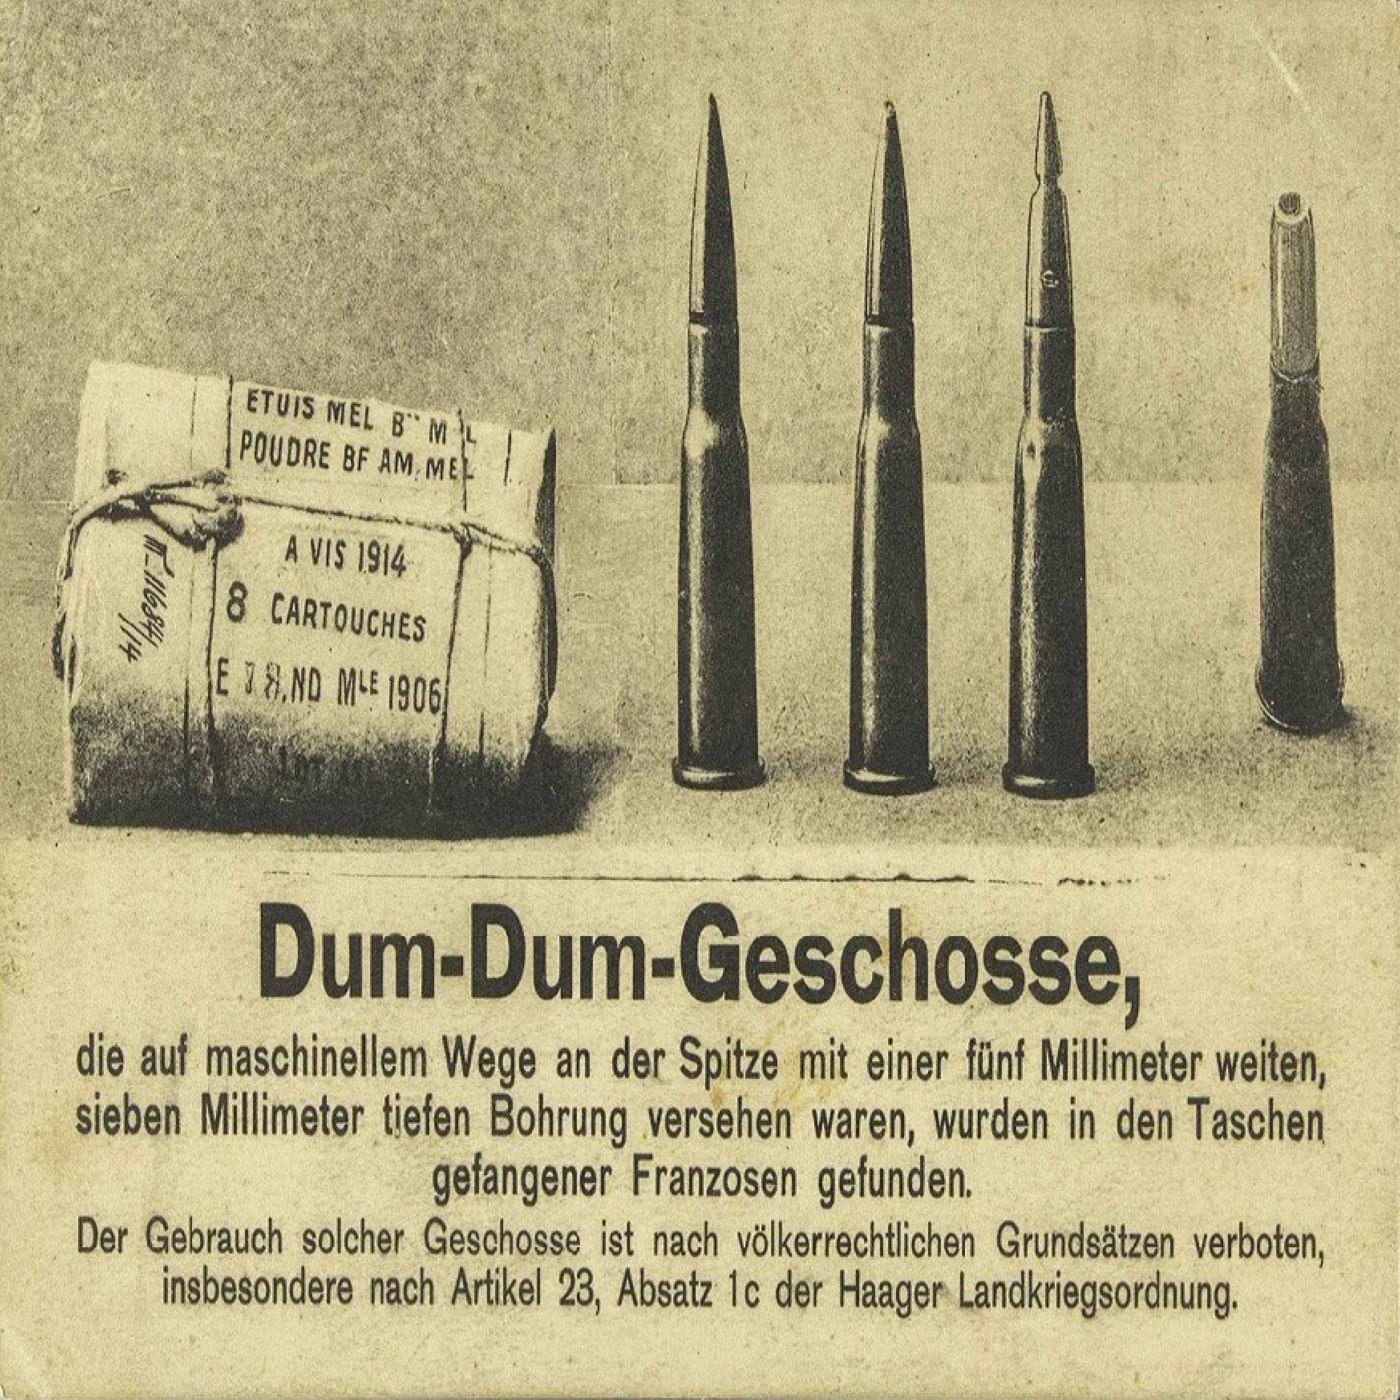 Y-054: Weltkriegspropaganda auf einer Postkarte der Druckerei Schaar & Dathe (1914)